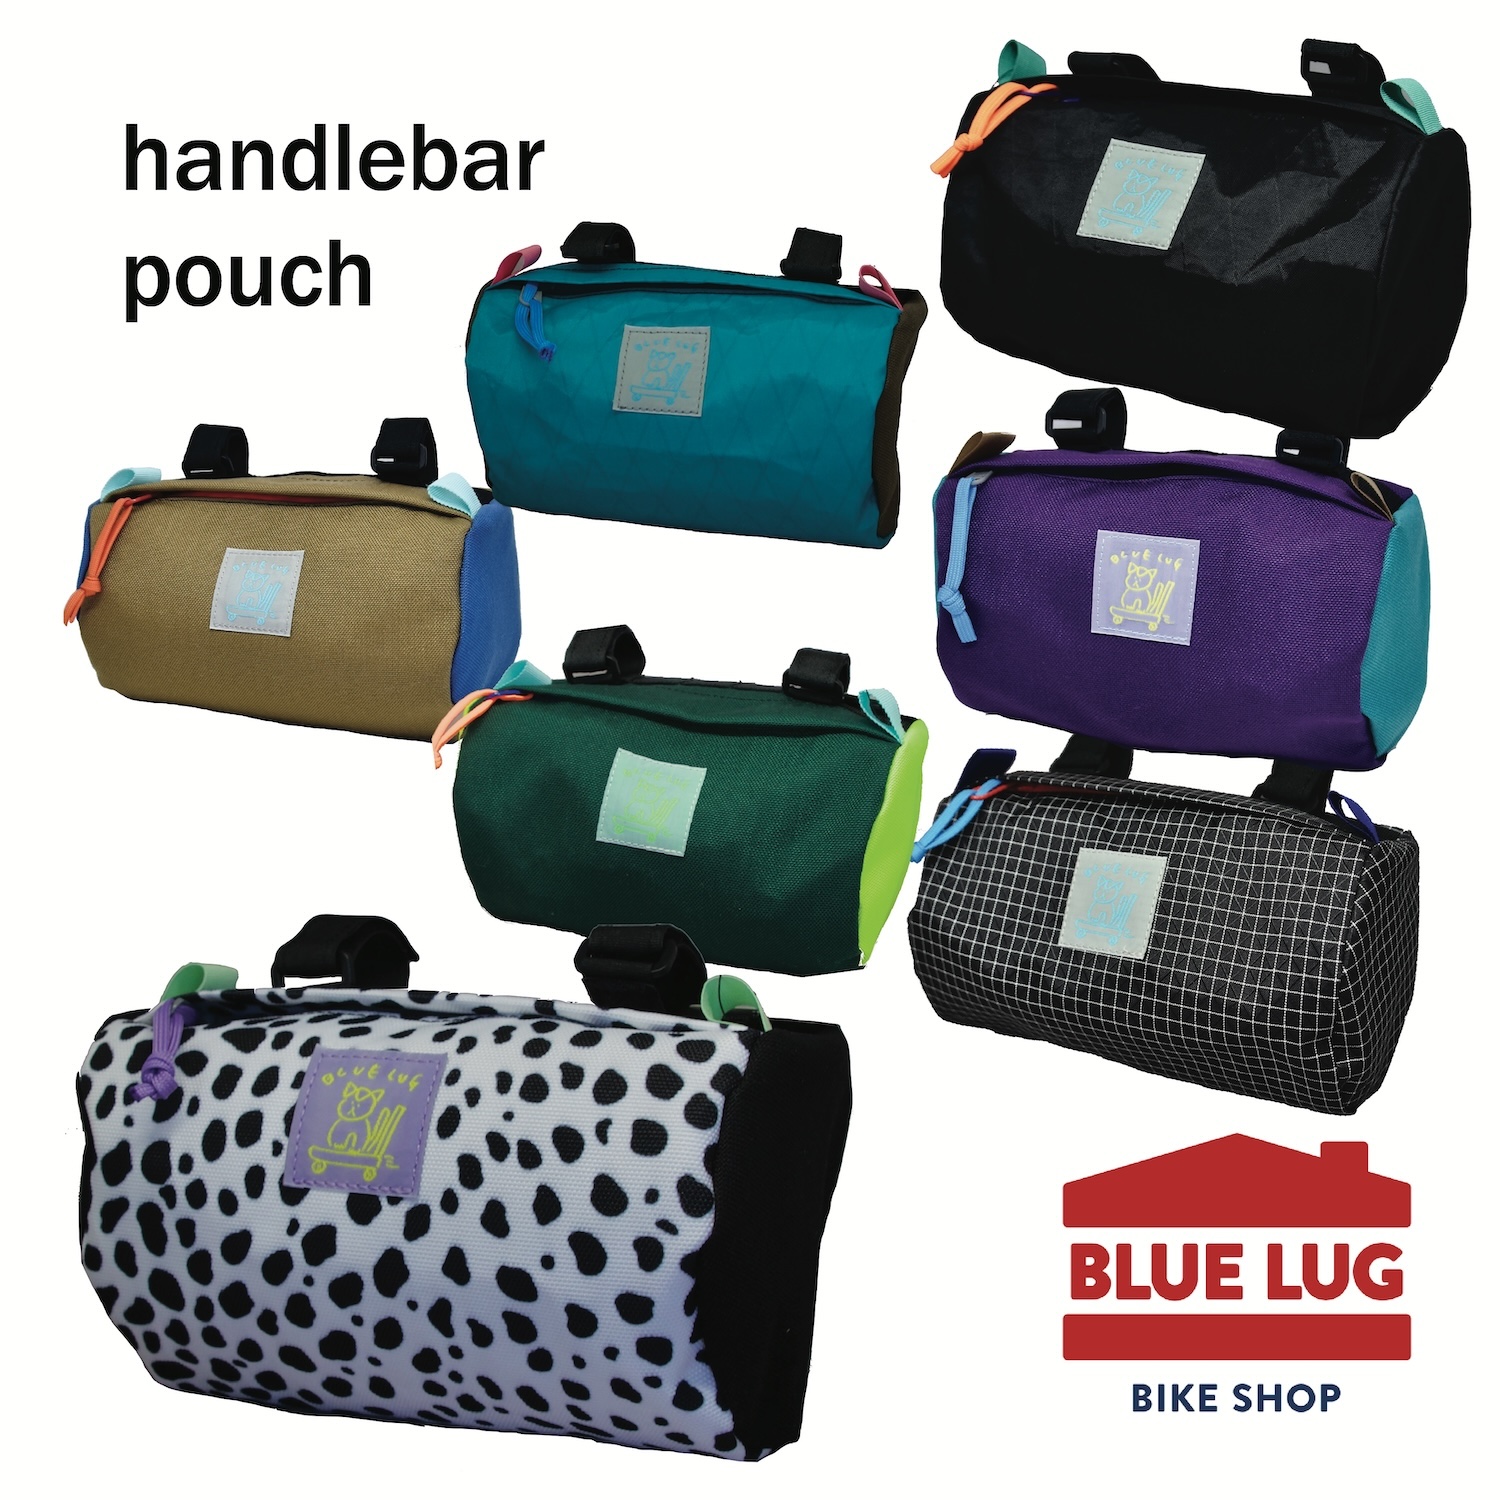 【再入荷】BLUE LUG ハンドルバーポーチ handlebar pouch ブルーラグ bluelug 自転車バッグ ハンドルバーバッグ 即納